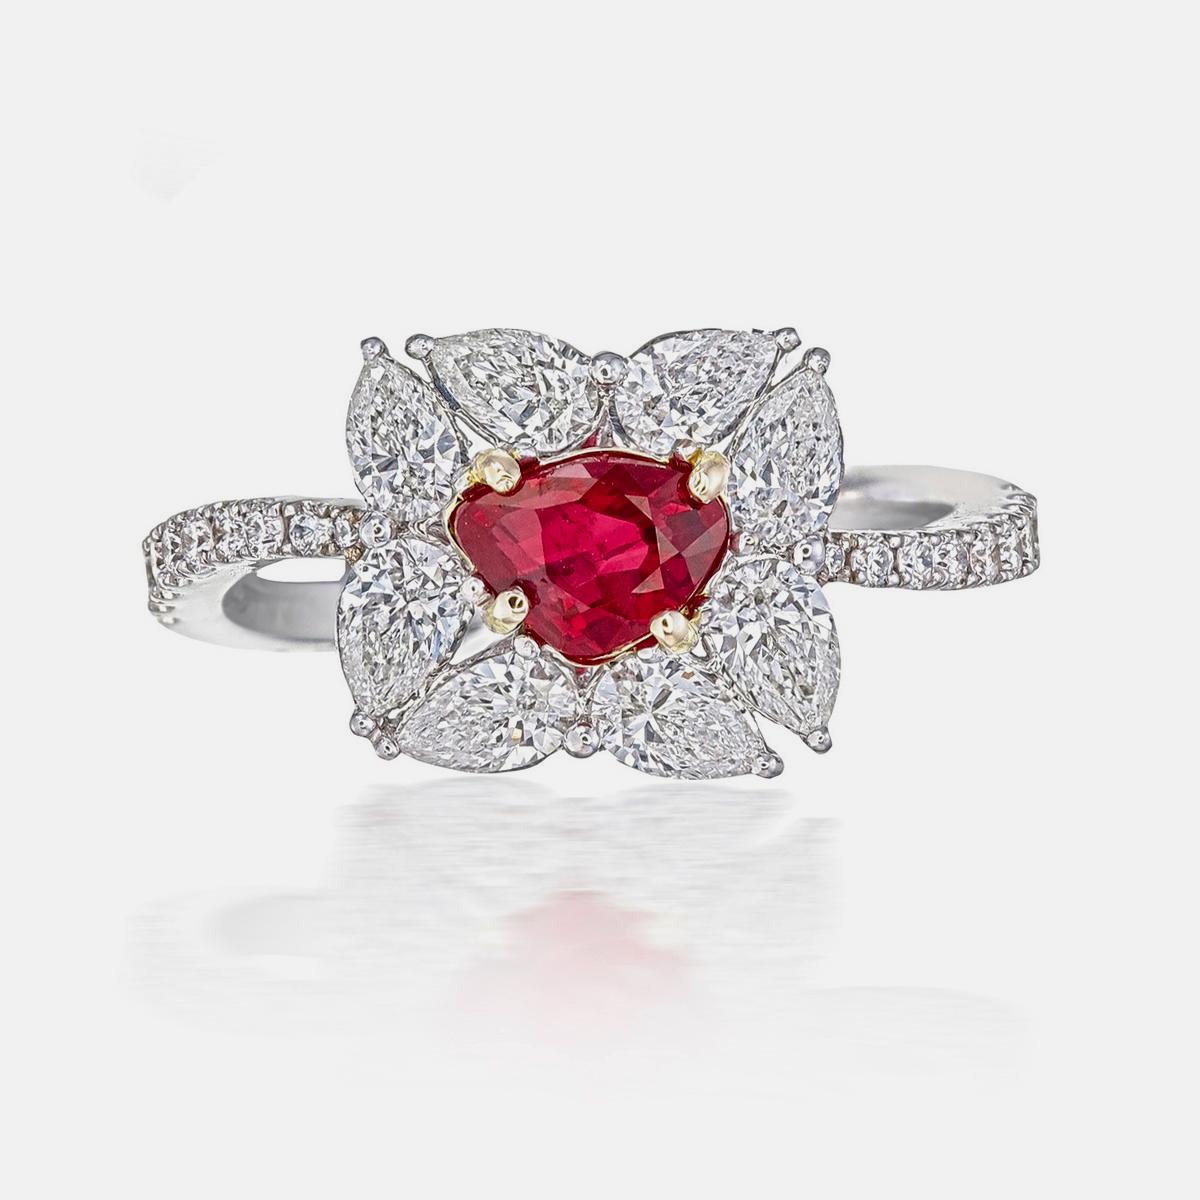 Bague solitaire en or 18 carats, rubis et diamants, de couleur rouge 